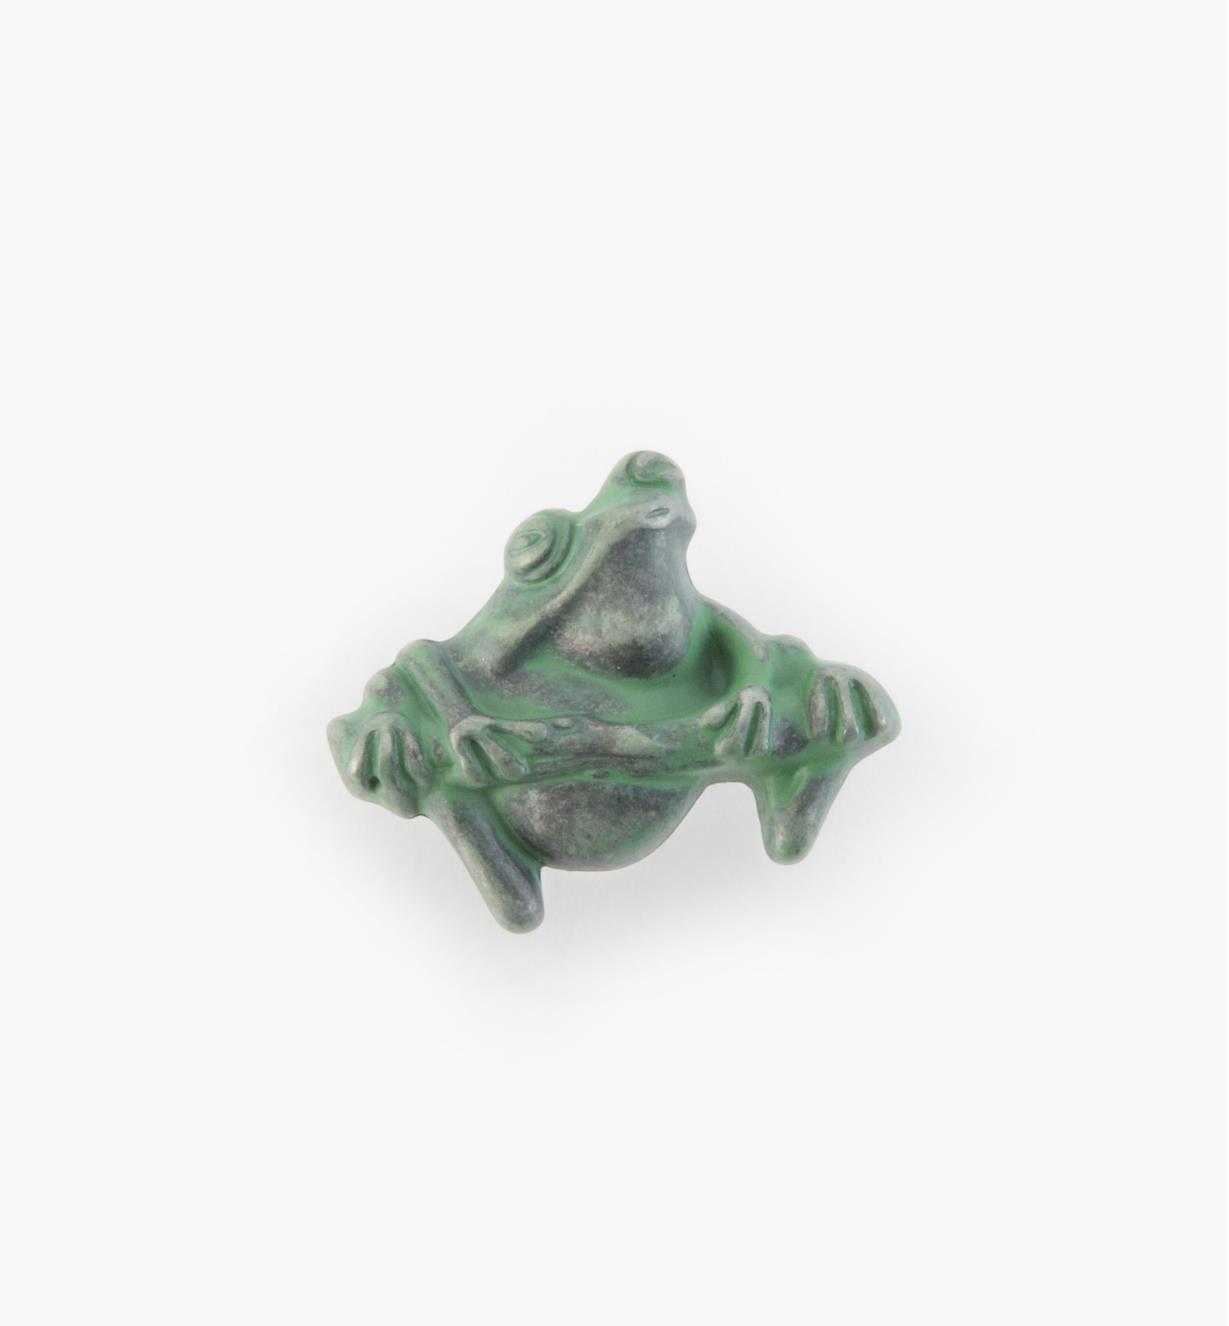 03W2816 - Bouton grenouille, Whimsical, vert-de-gris, 1 5/8 po, l'unité